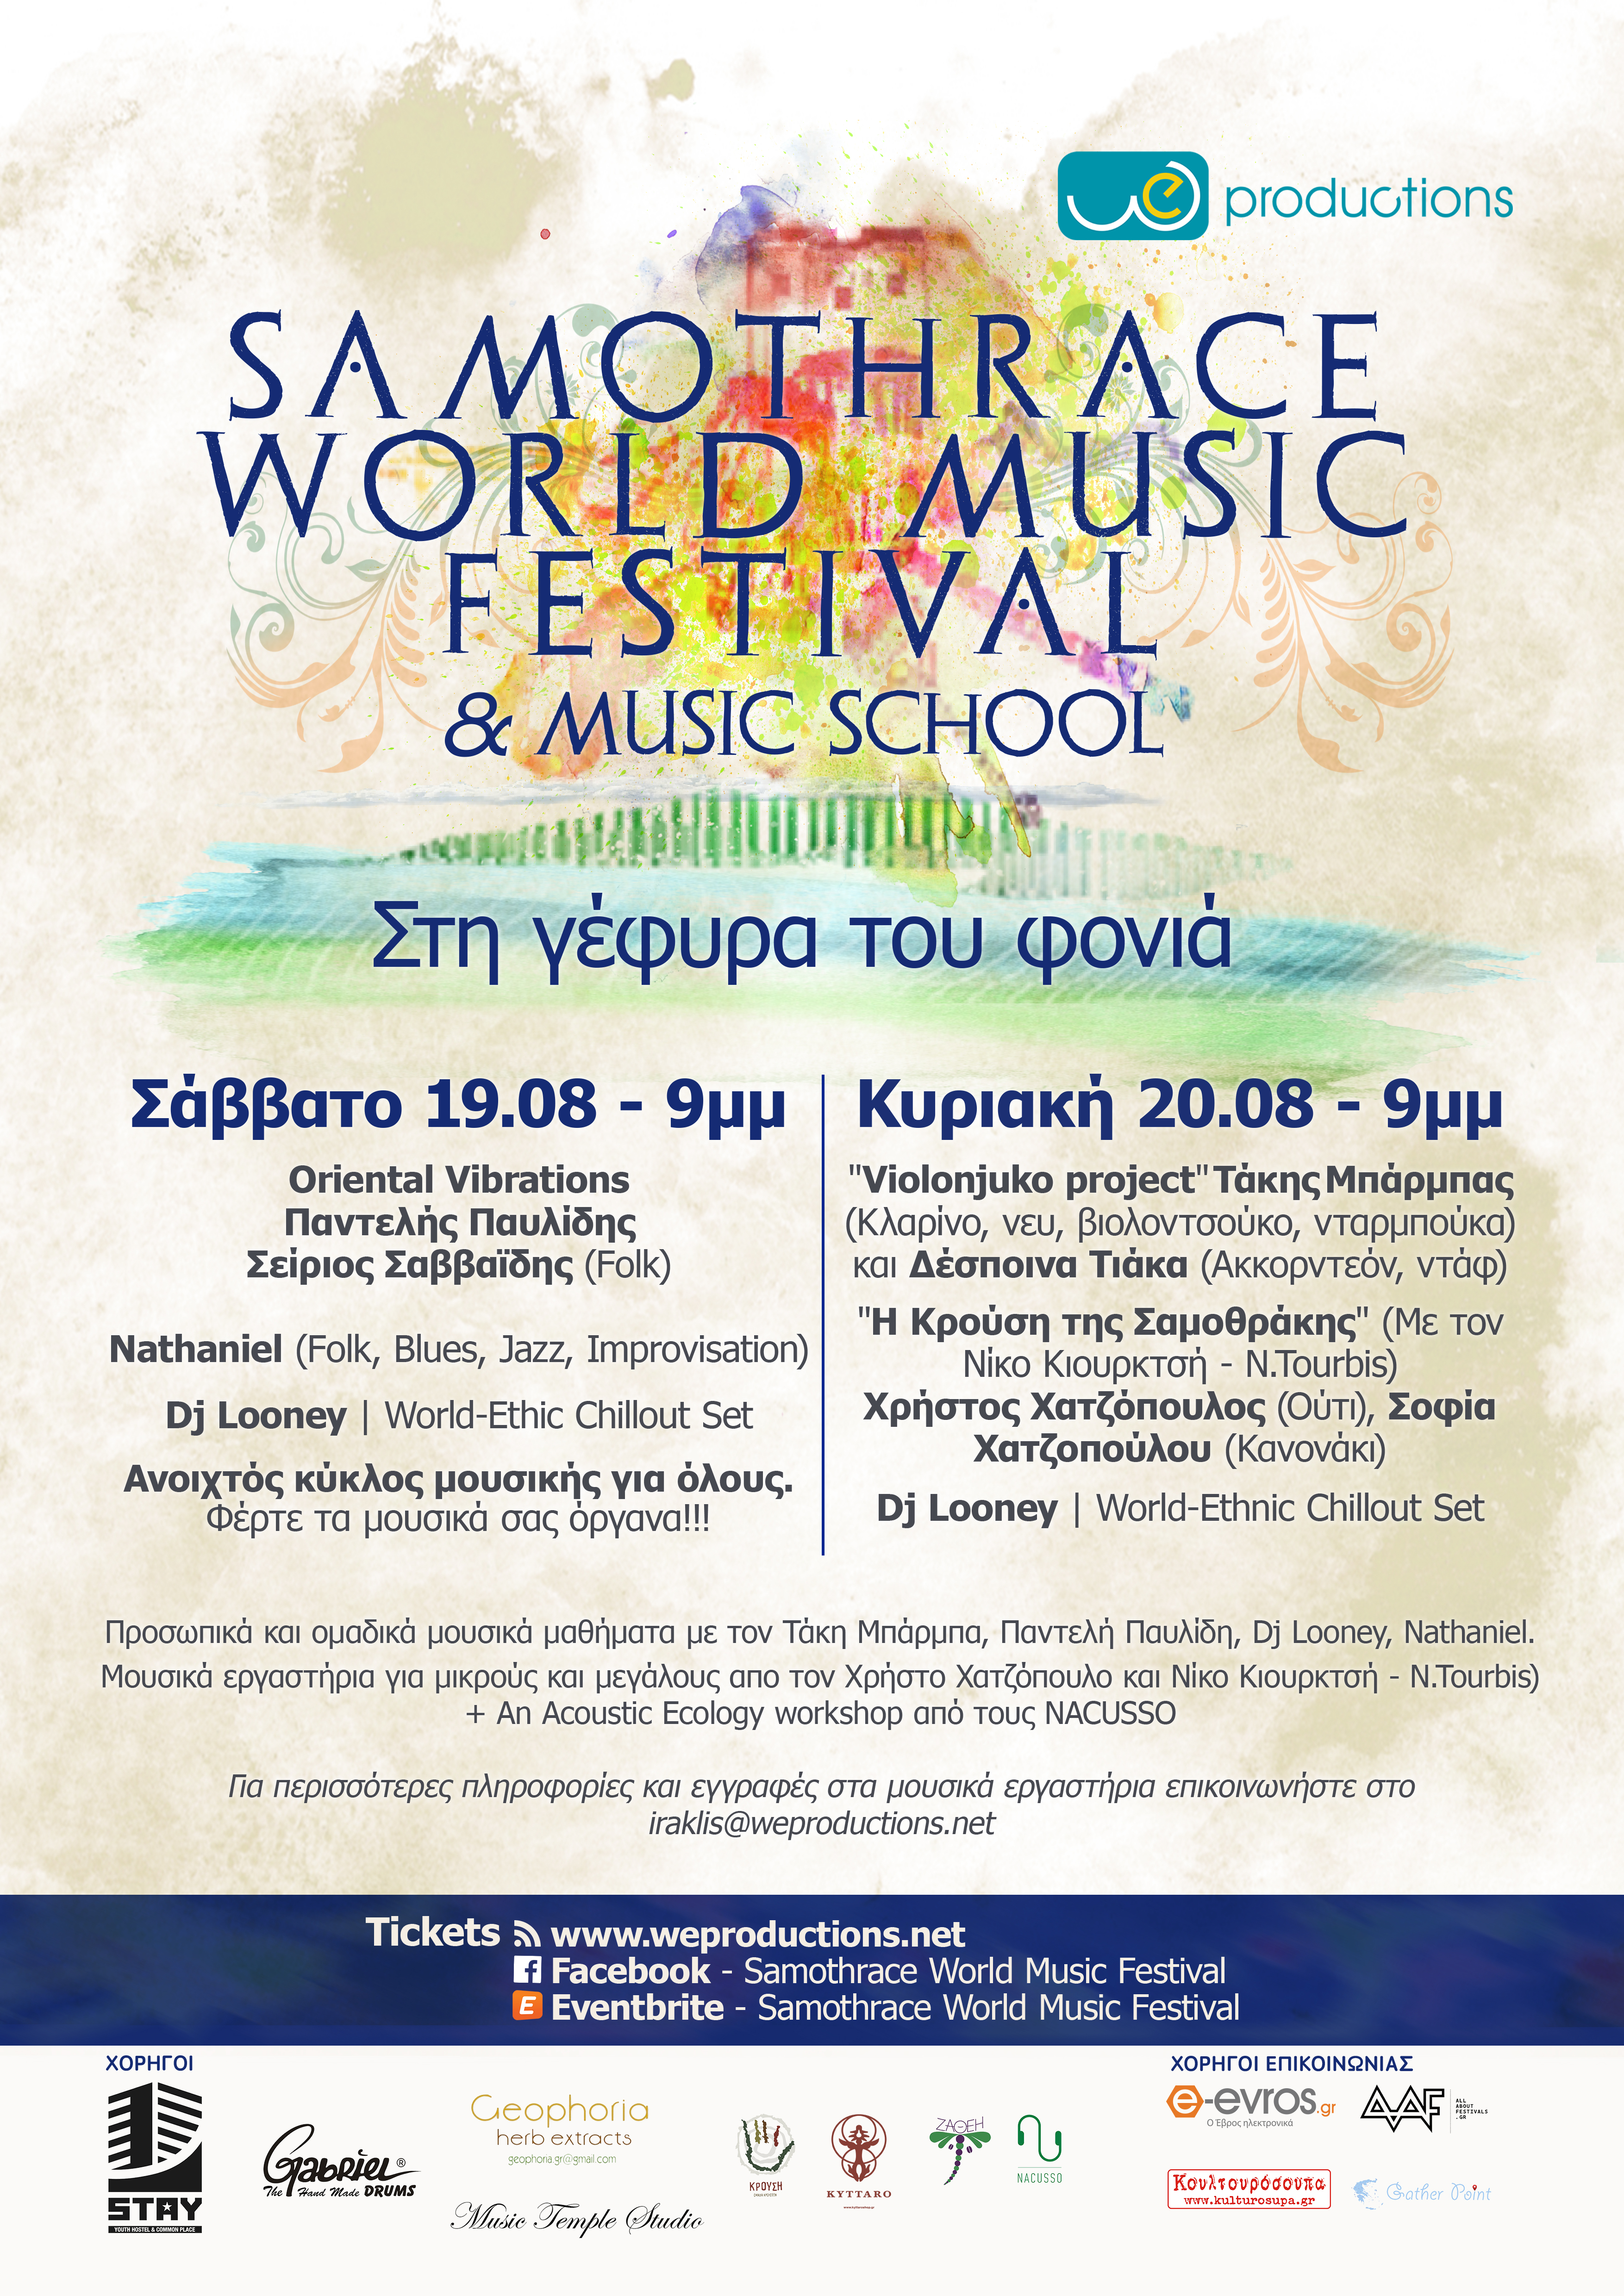 Samothrace World Music Festival